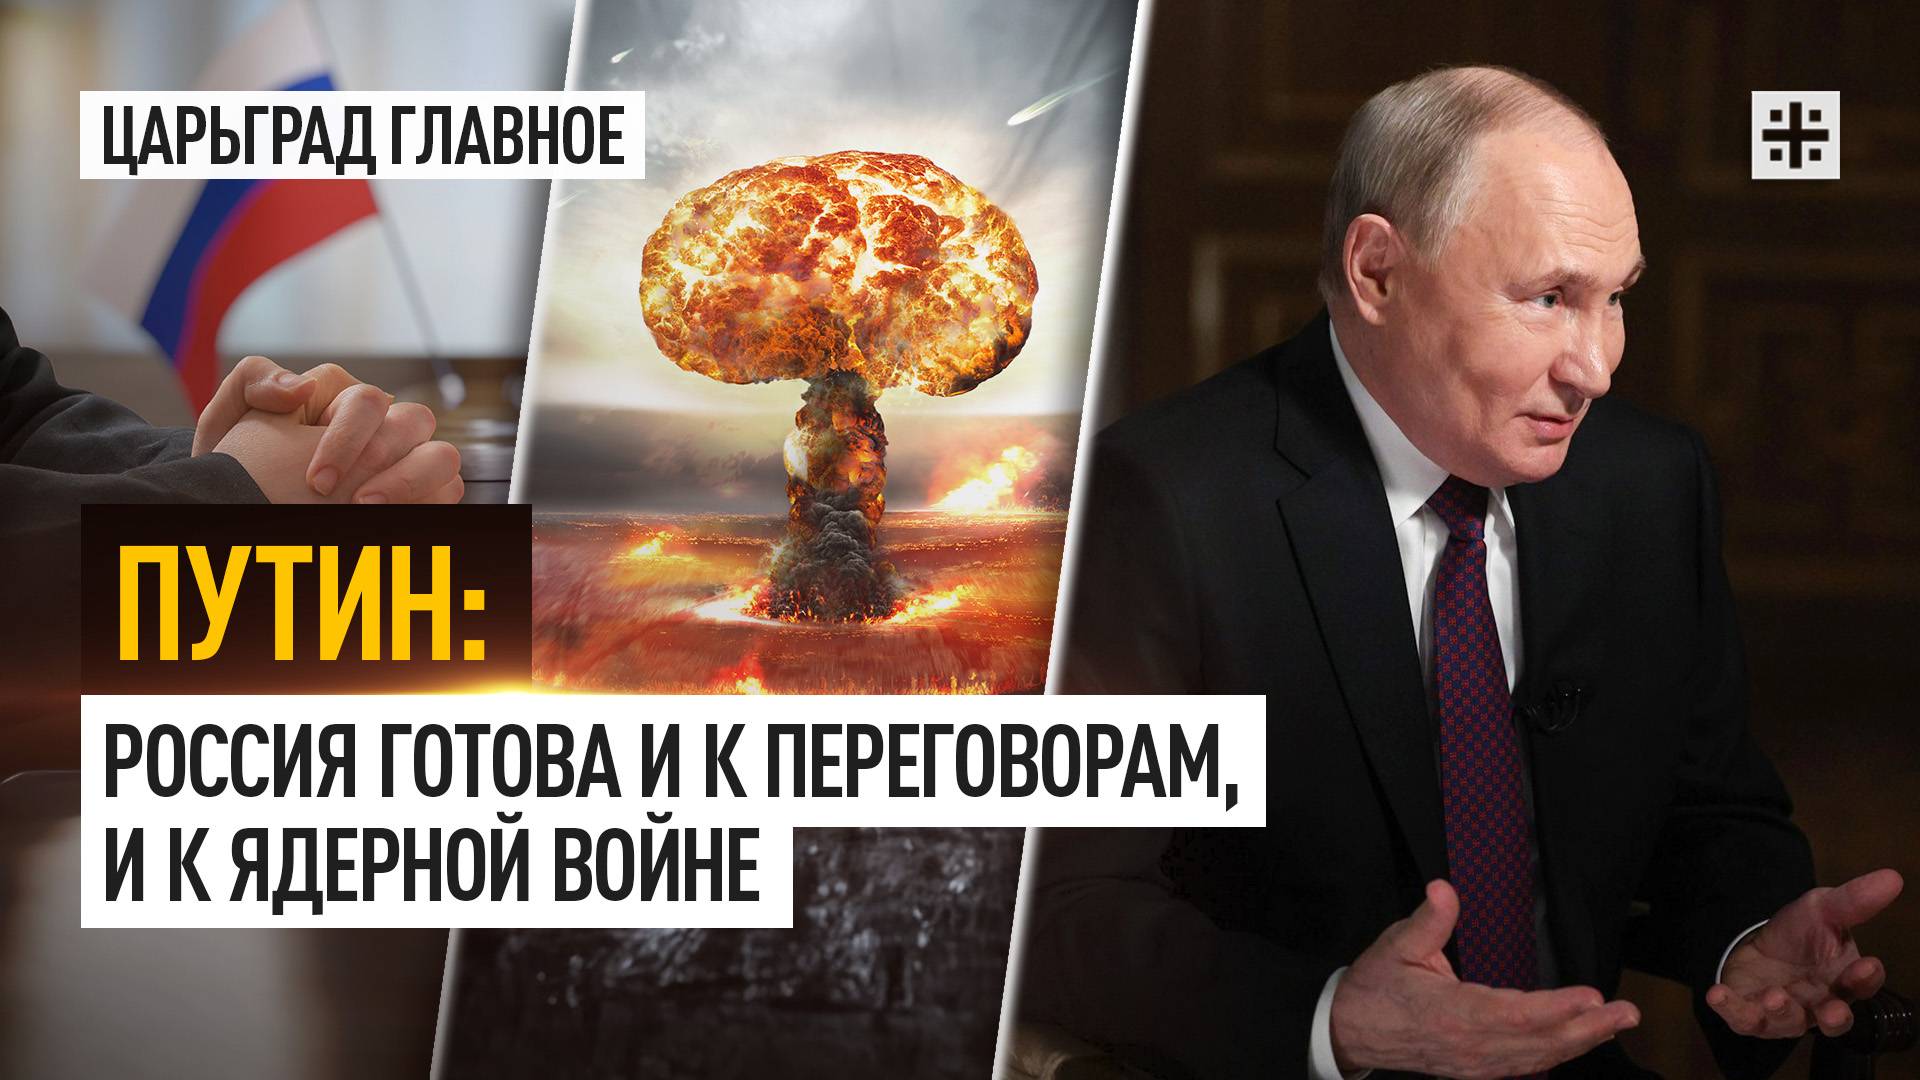 Путин: Россия готова и к переговорам, и к ядерной войне